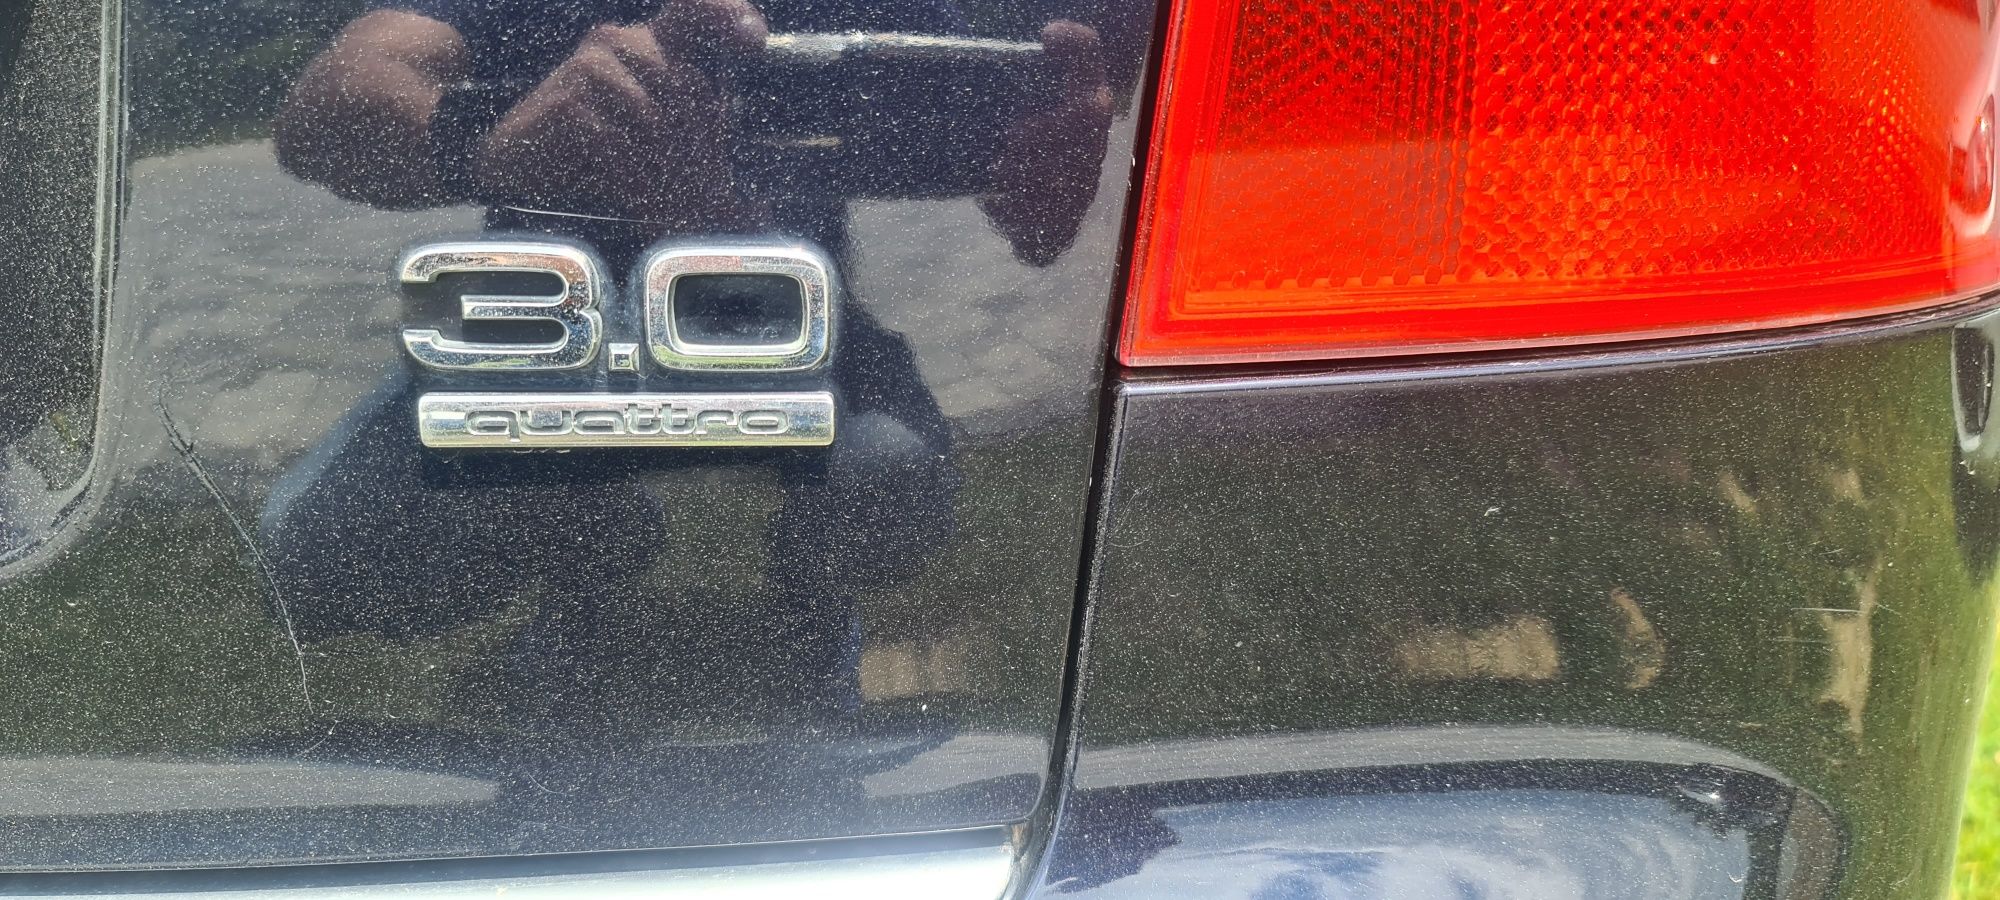 Audi A4 B6 3,0 v 6 4x4 po rozrządzie.